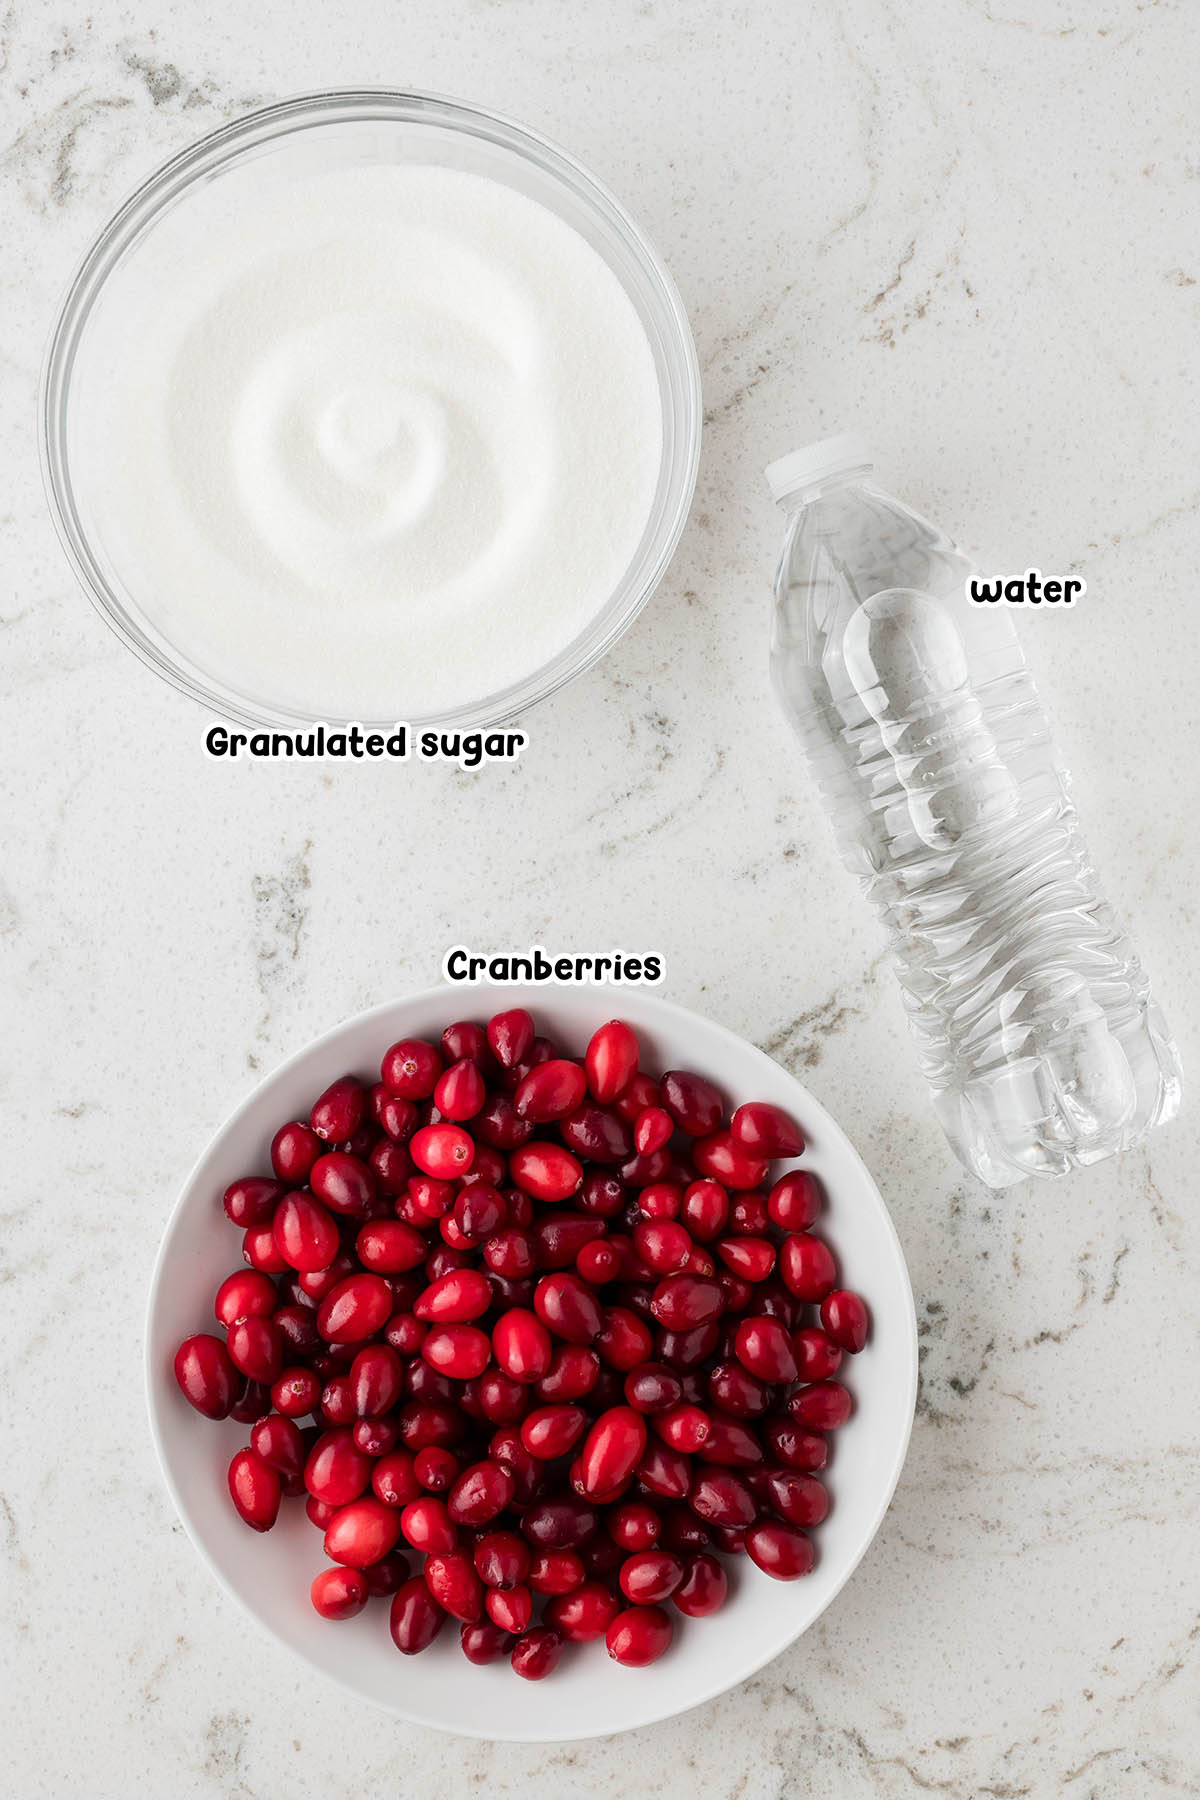 Sugared Cranberries ingredients.